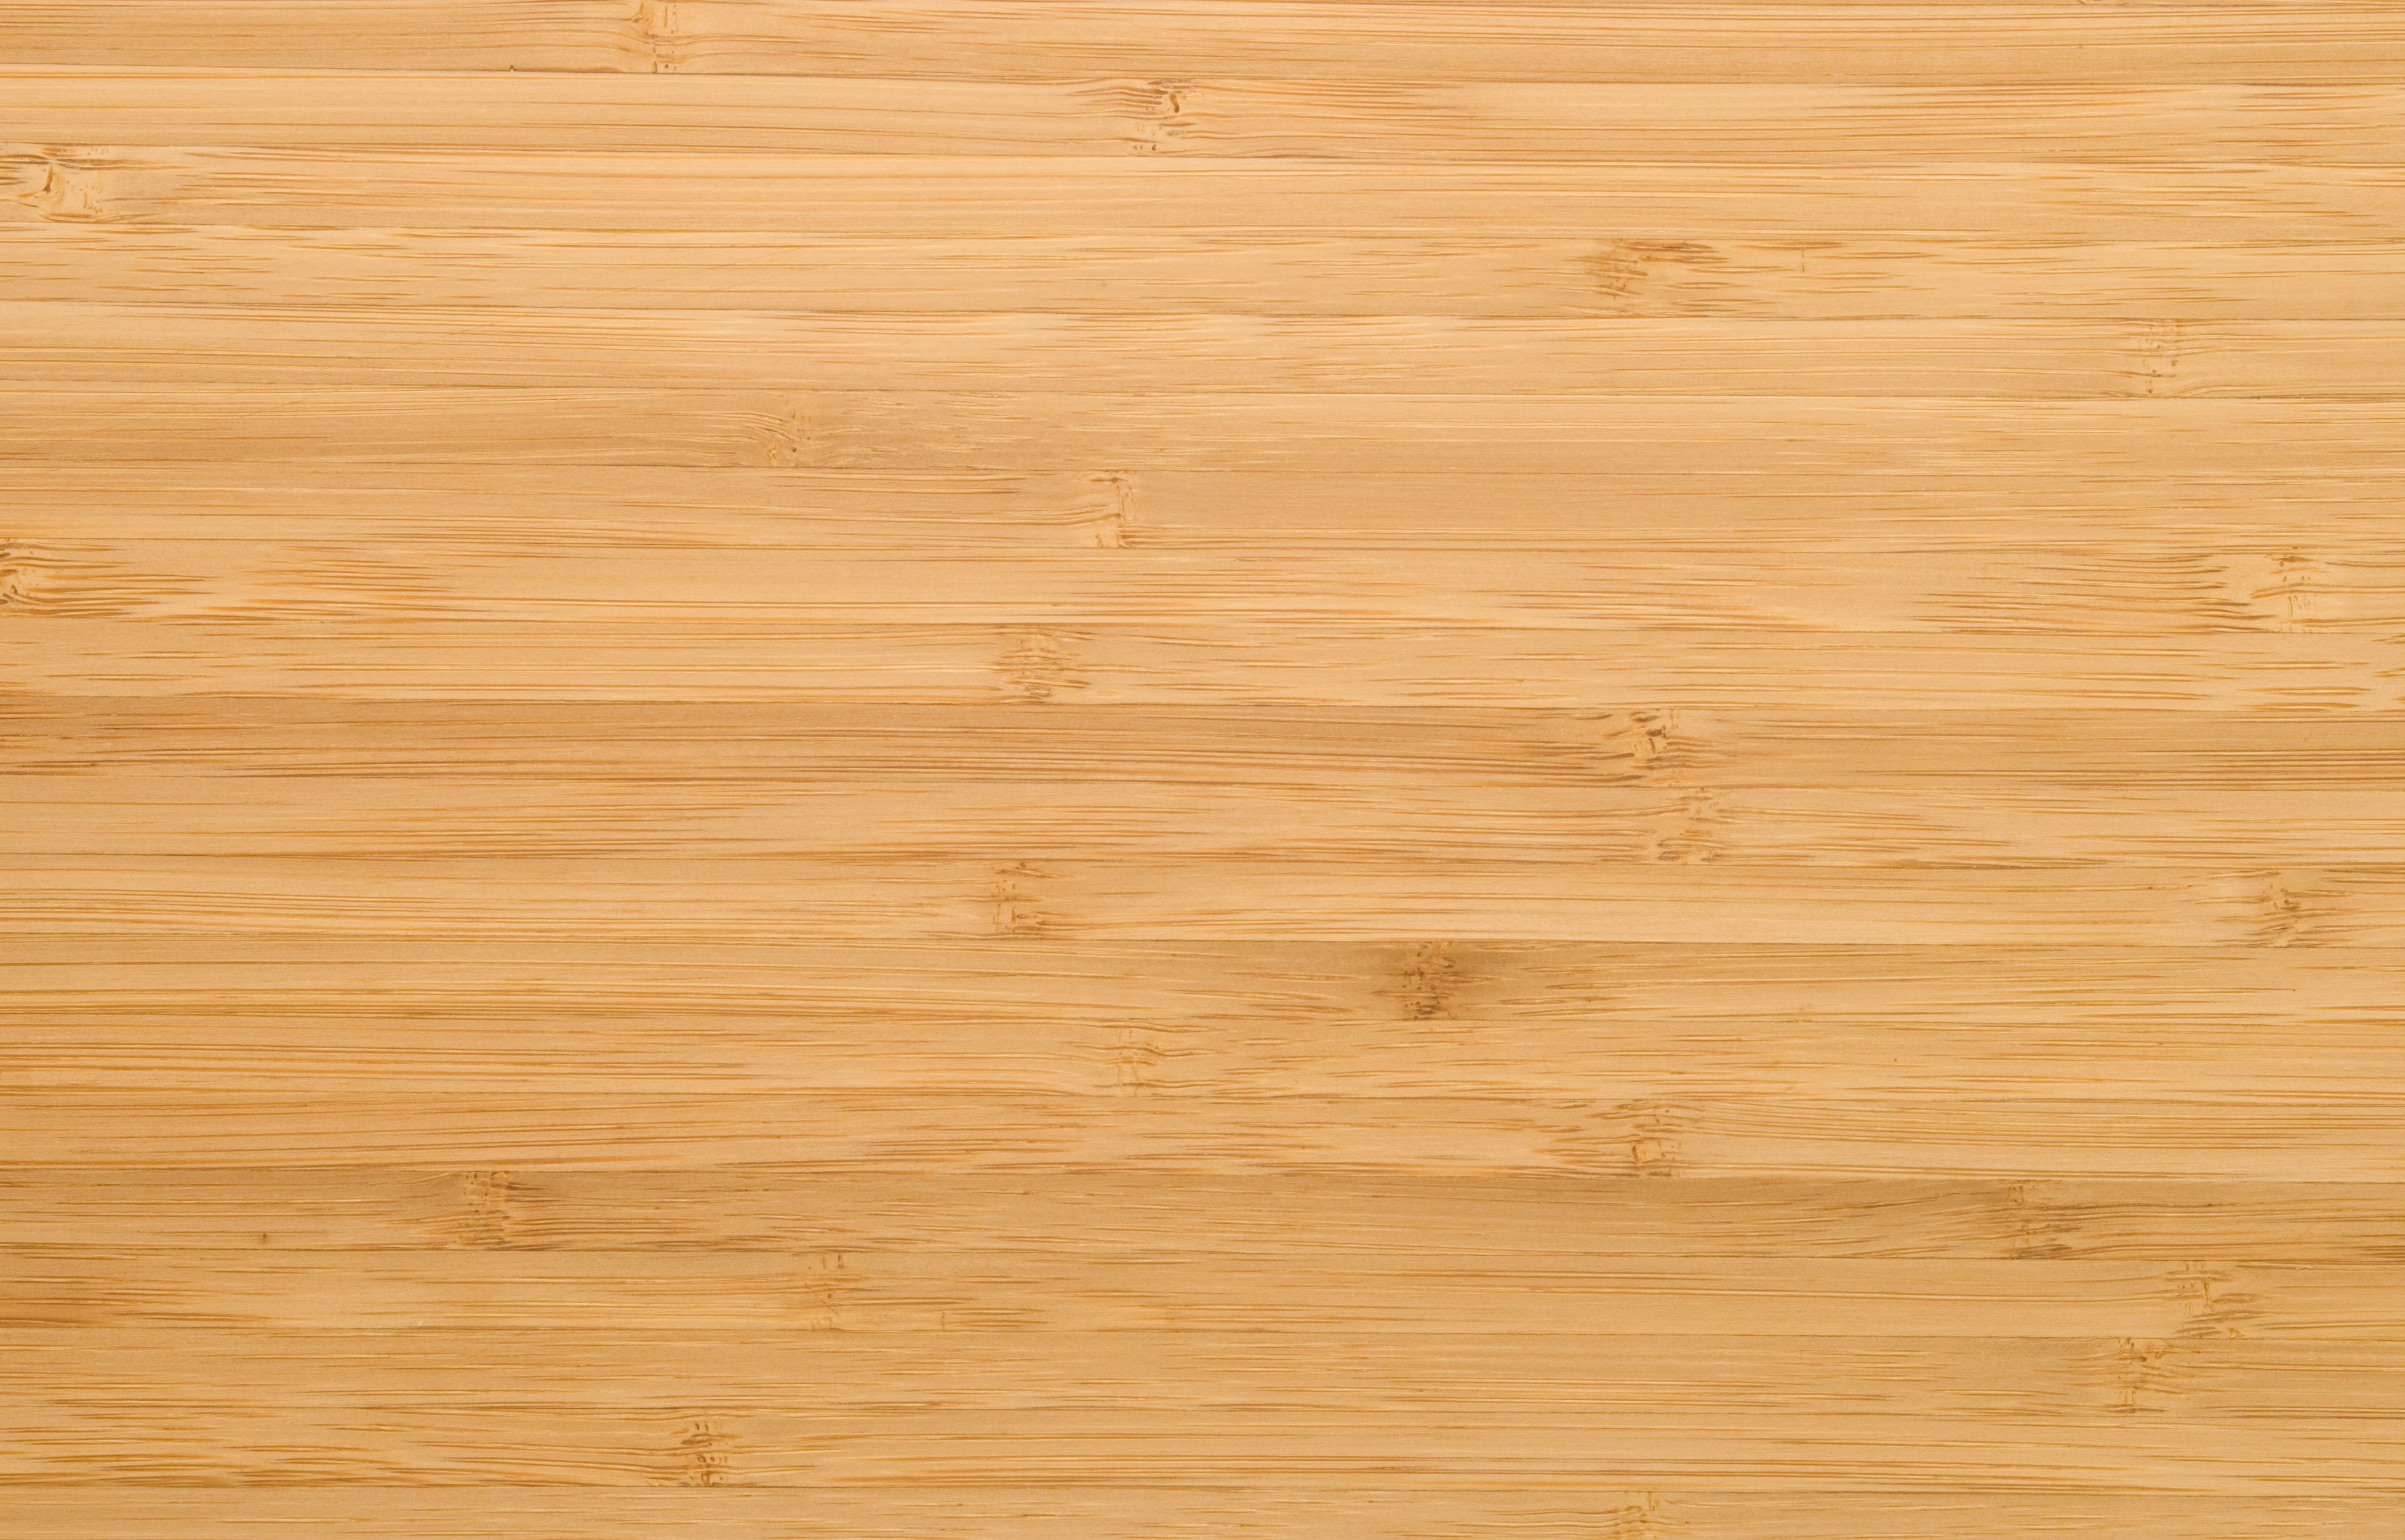 12 Trendy Best Hardwood Floor Pet Vacuum 2024 free download best hardwood floor pet vacuum of can you use a wet mop on bamboo floors in natural bamboo plank 94259870 59aeefd4519de20010d5c648